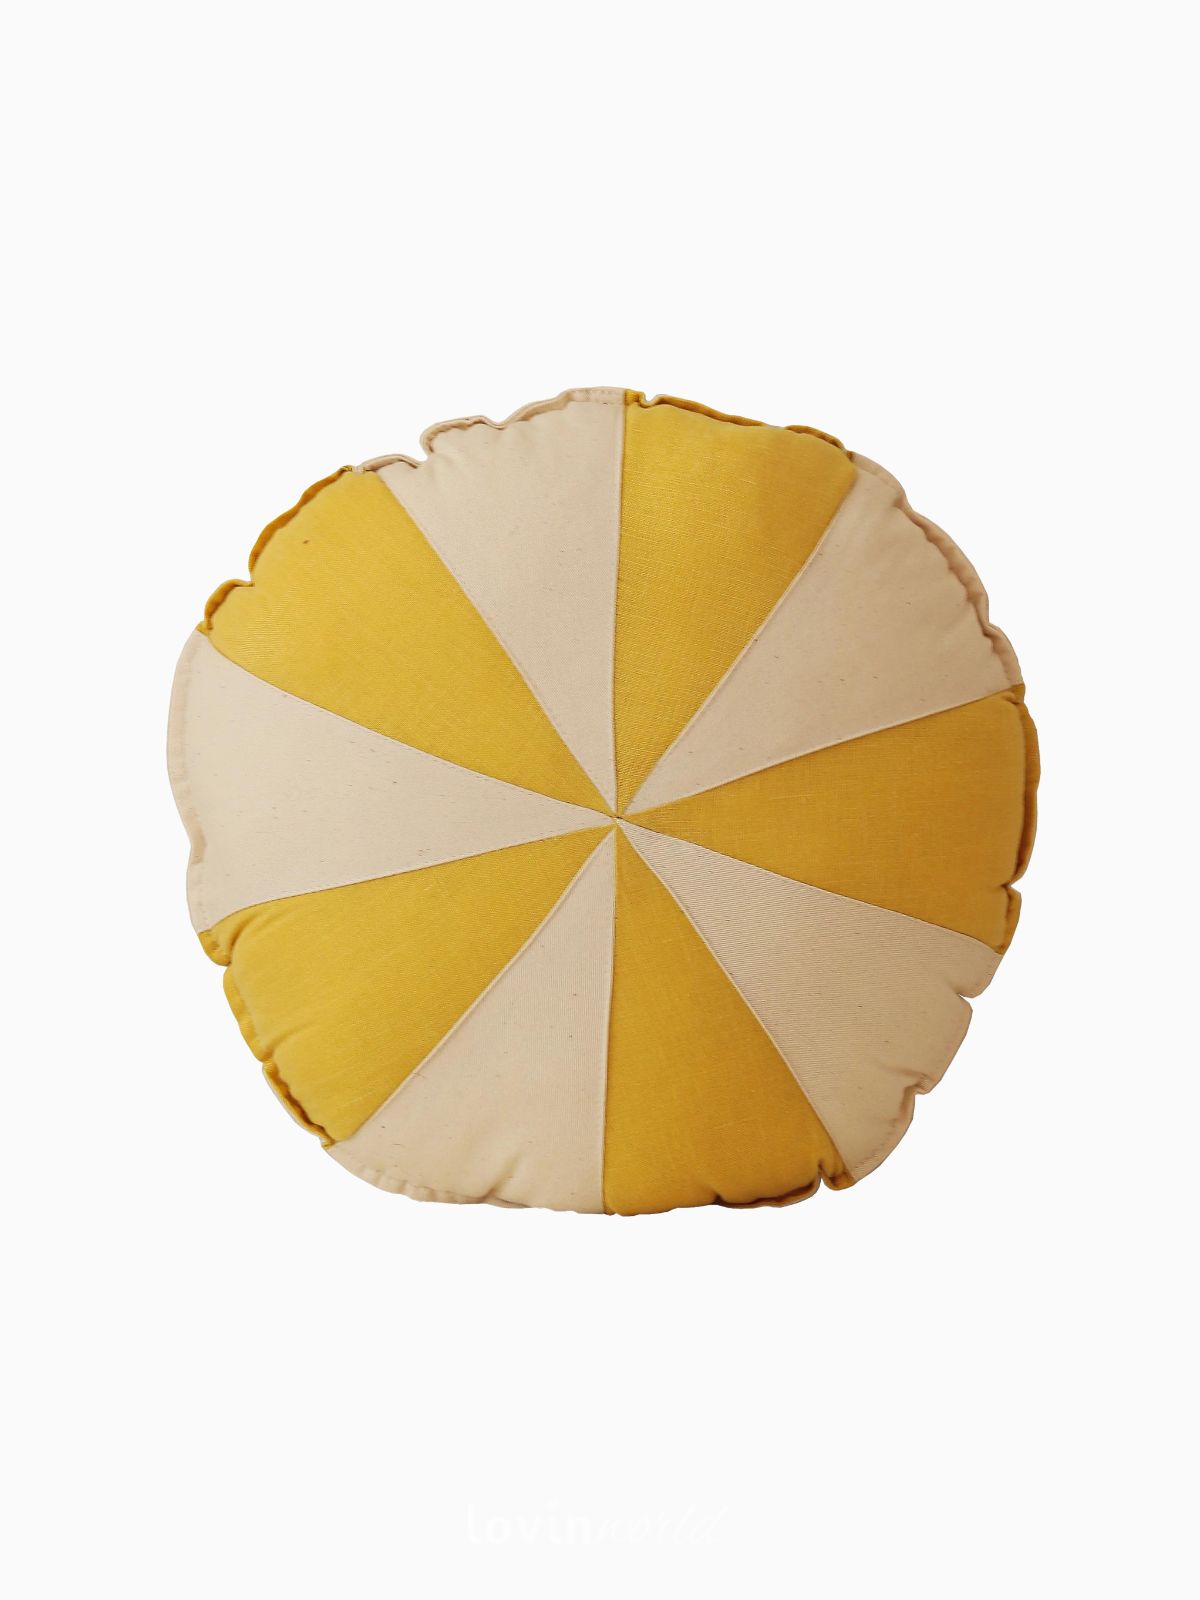 Cuscino Circo 100% lino e cotone in colore giallo e beige 39x39 cm.-1